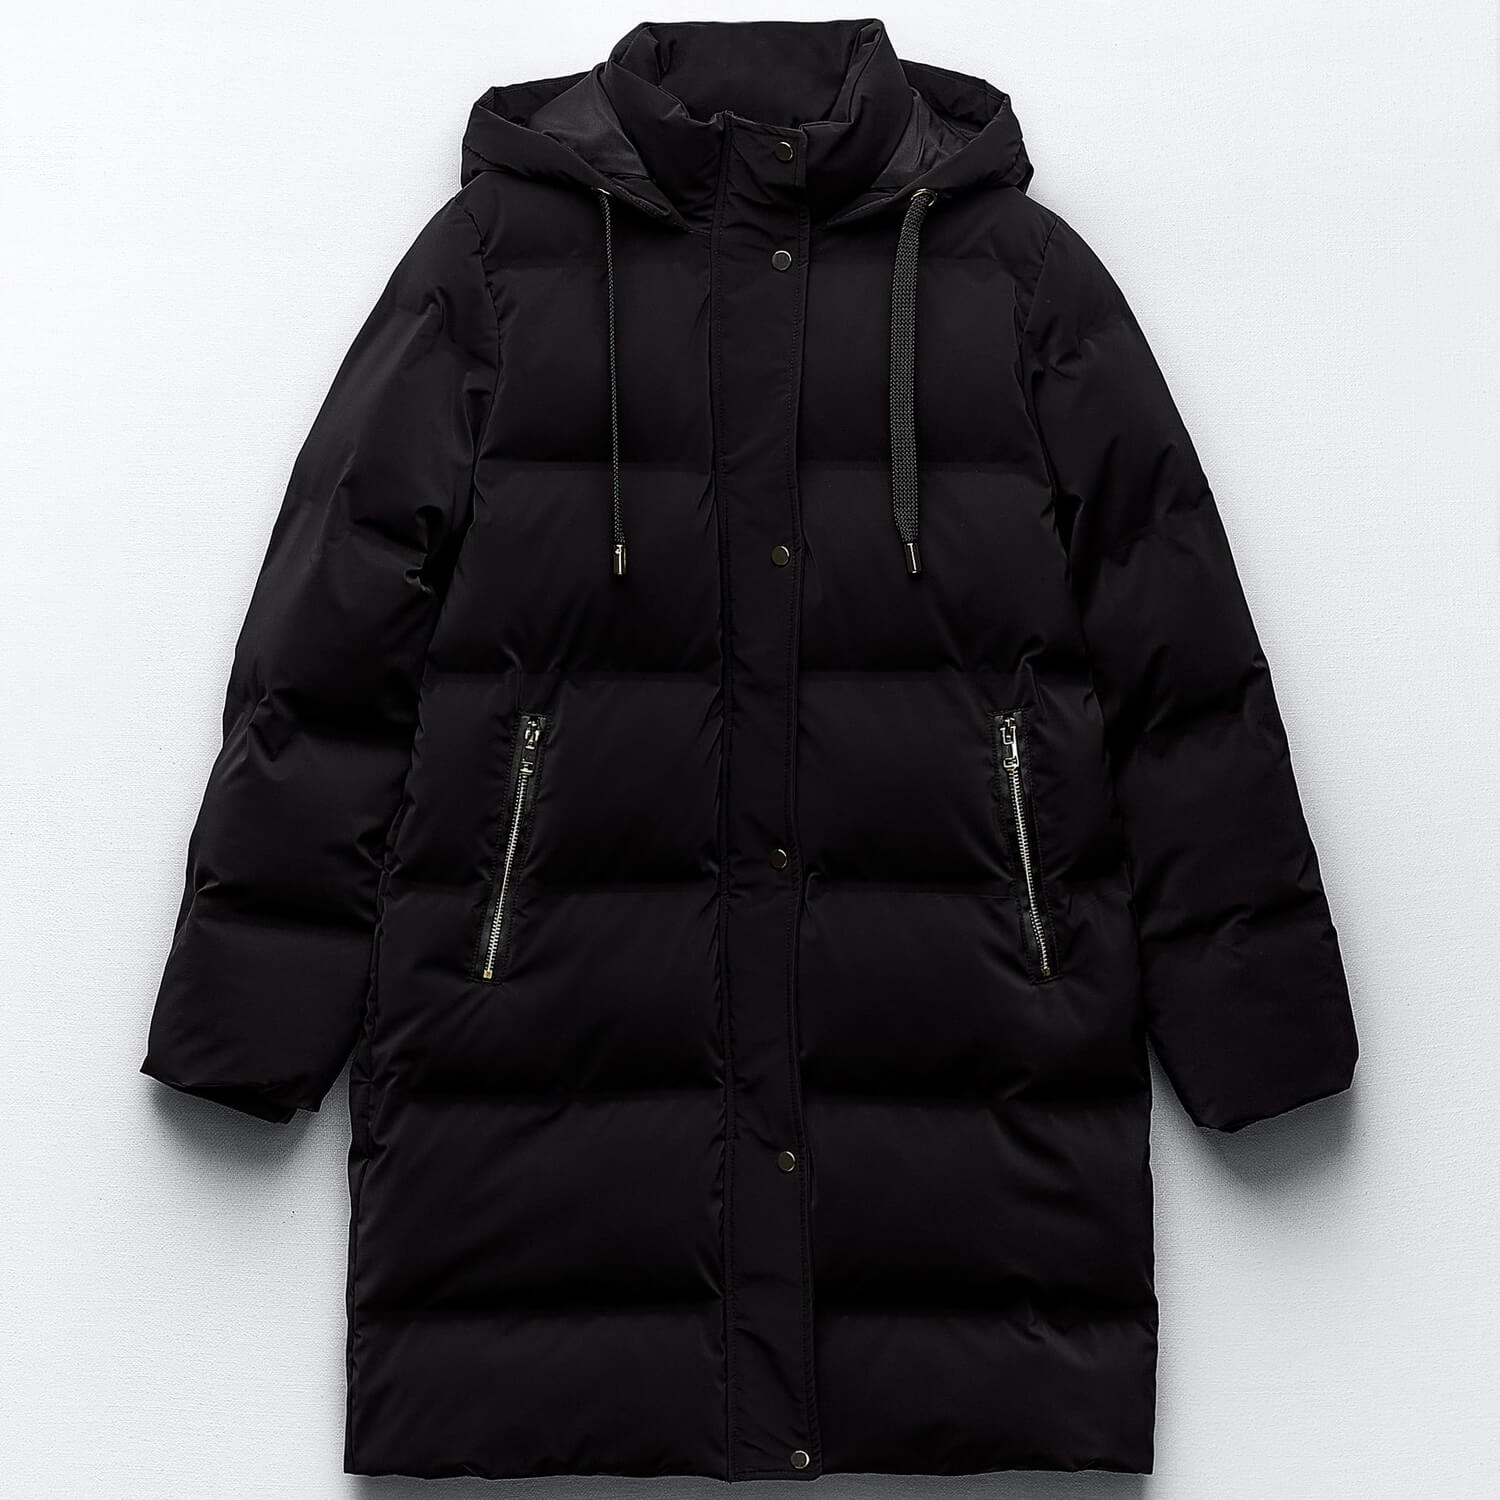 Куртка-анорак Zara Hooded With Wind Protection, черный толстовка boboli средней длины капюшон карманы размер 152 синий черный